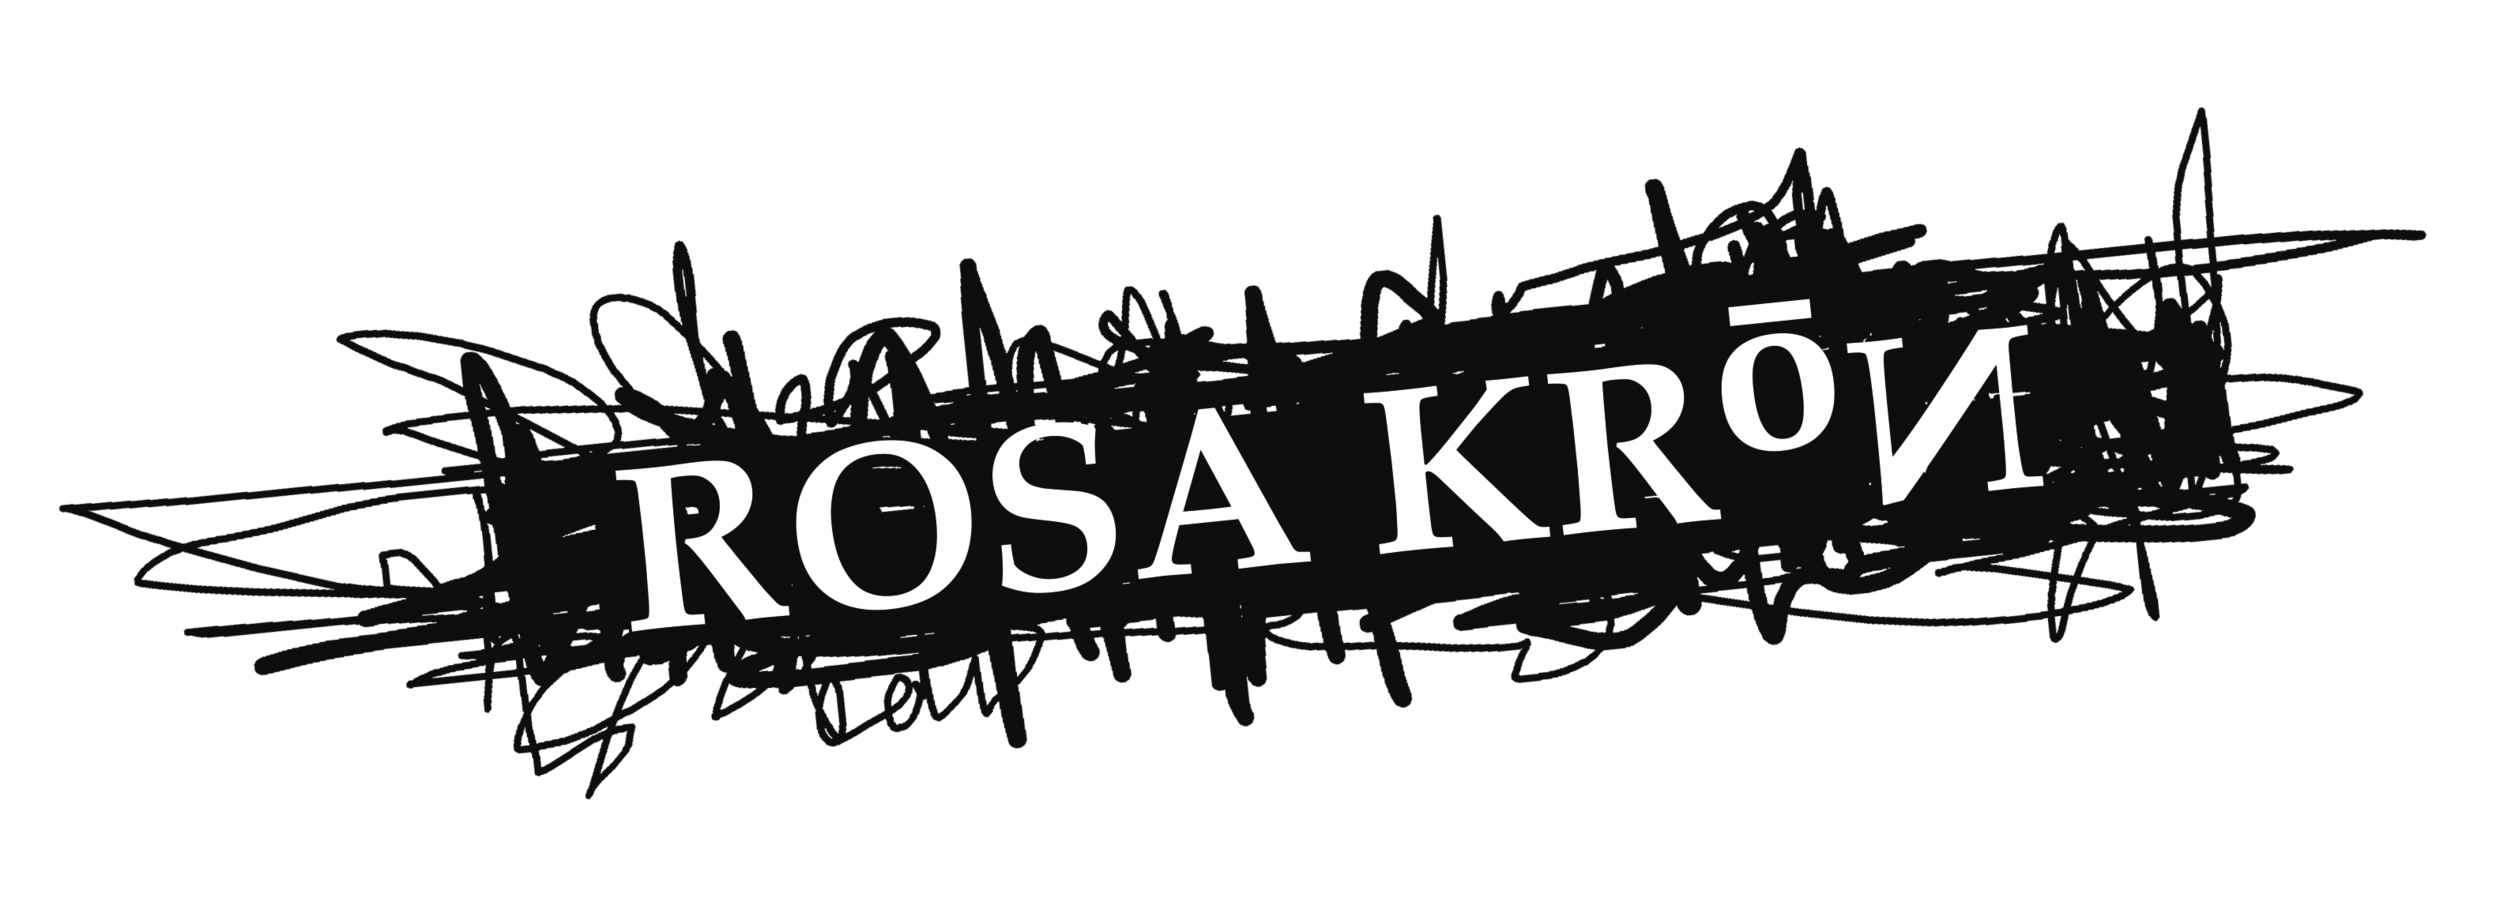 Rosa Kron Design